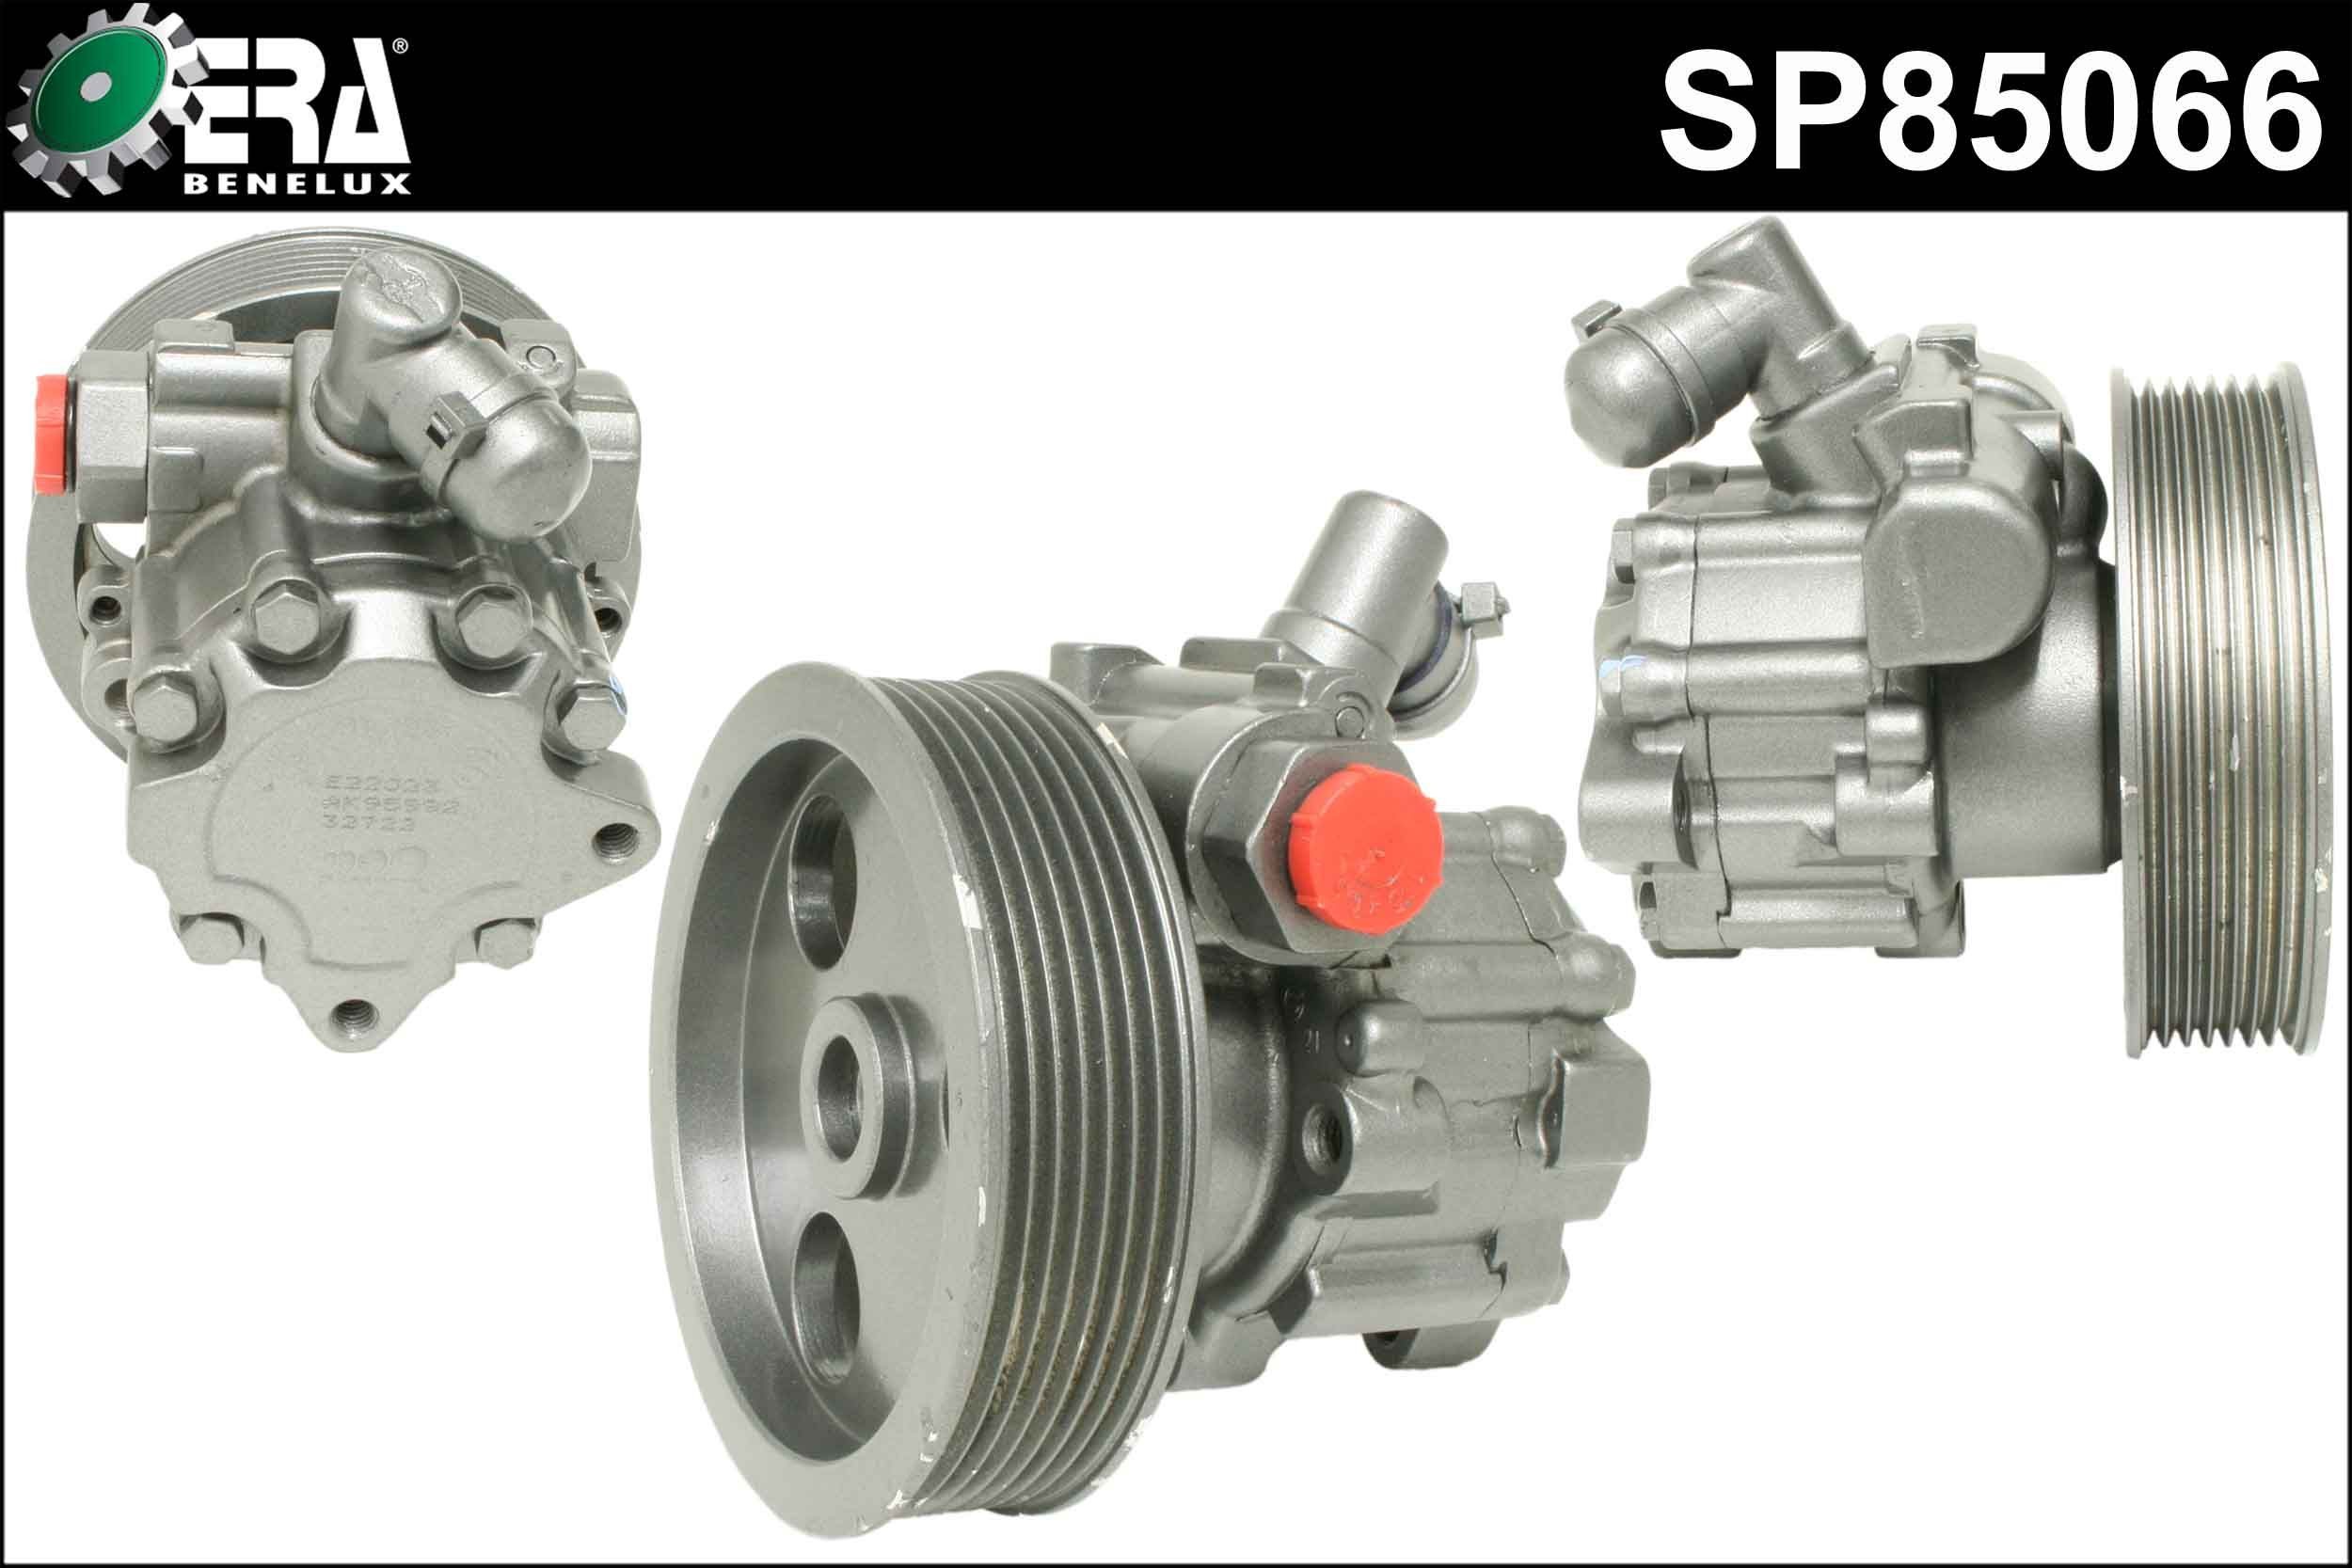 ERA Benelux SP85066 Power steering pump 005 466 02 01